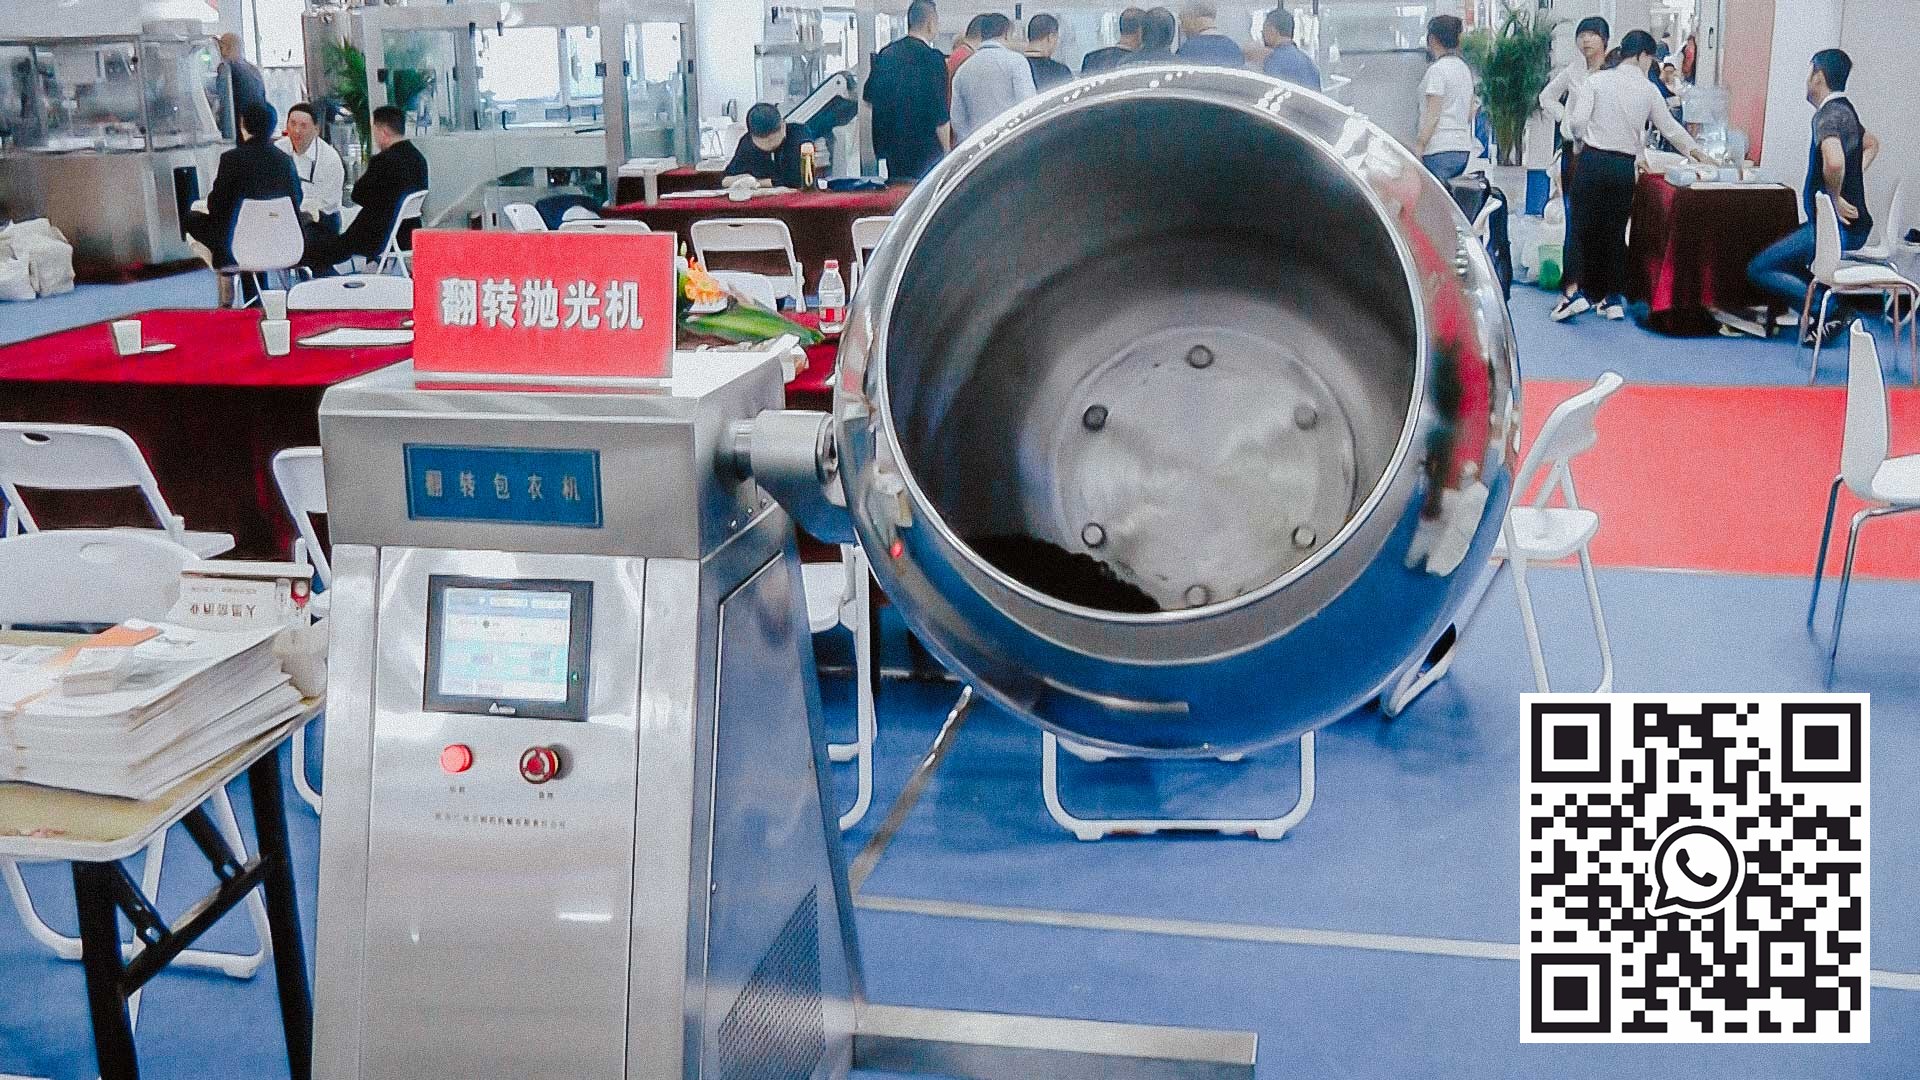 آلة طلاء المختبر لطلاء الجهاز اللوحي بغلاف واقي وملون